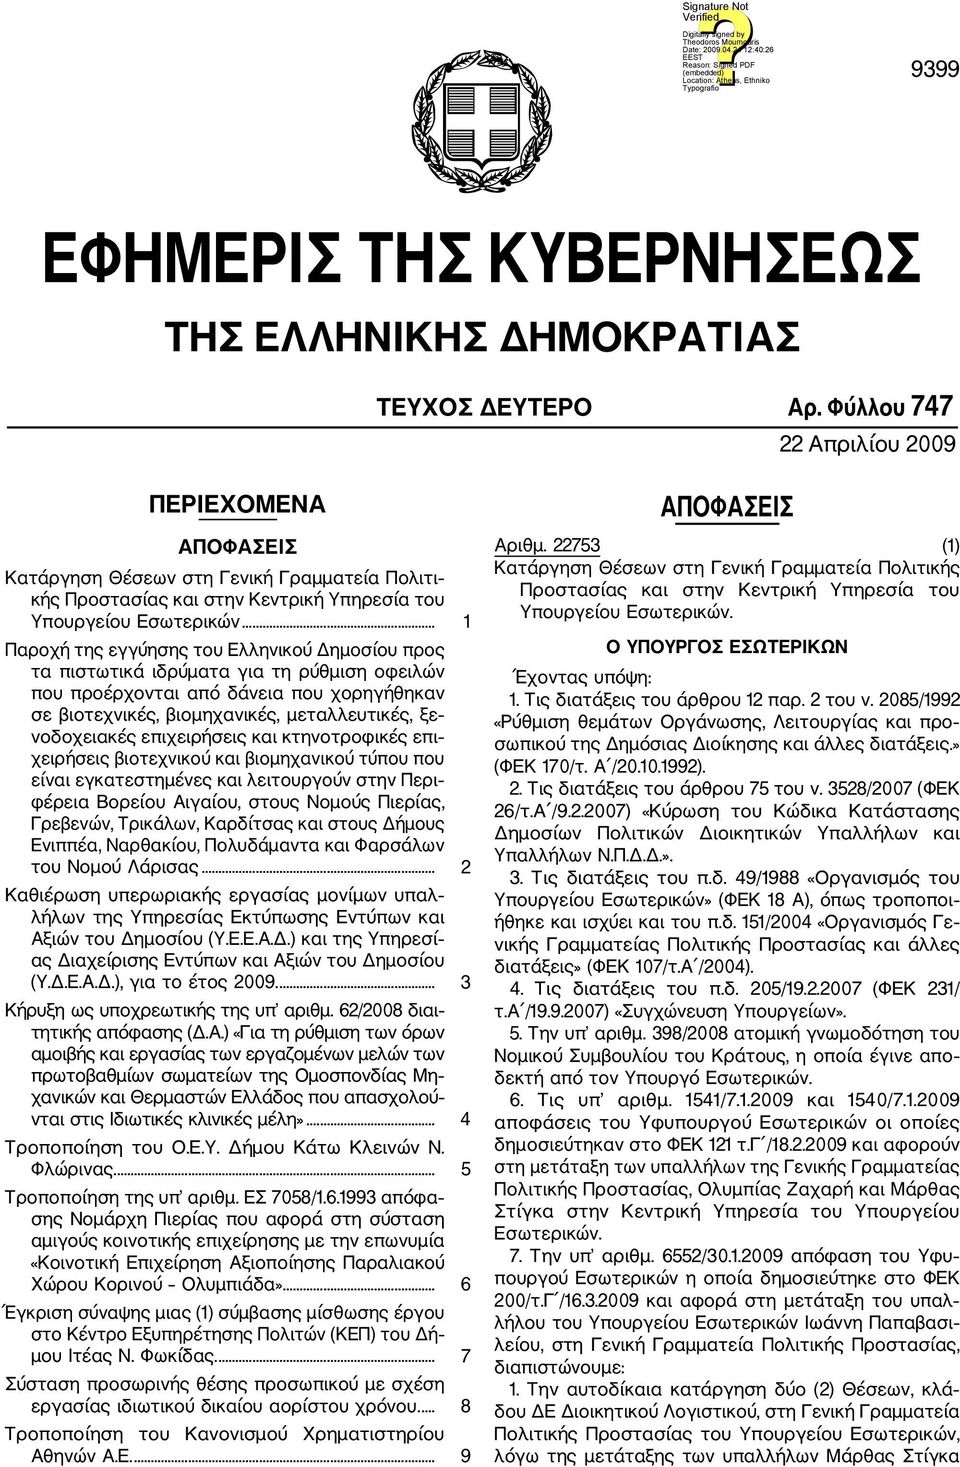 .. 1 Παροχή της εγγύησης του Ελληνικού Δημοσίου προς τα πιστωτικά ιδρύματα για τη ρύθμιση οφειλών που προέρχονται από δάνεια που χορηγήθηκαν σε βιοτεχνικές, βιομηχανικές, μεταλλευτικές, ξε